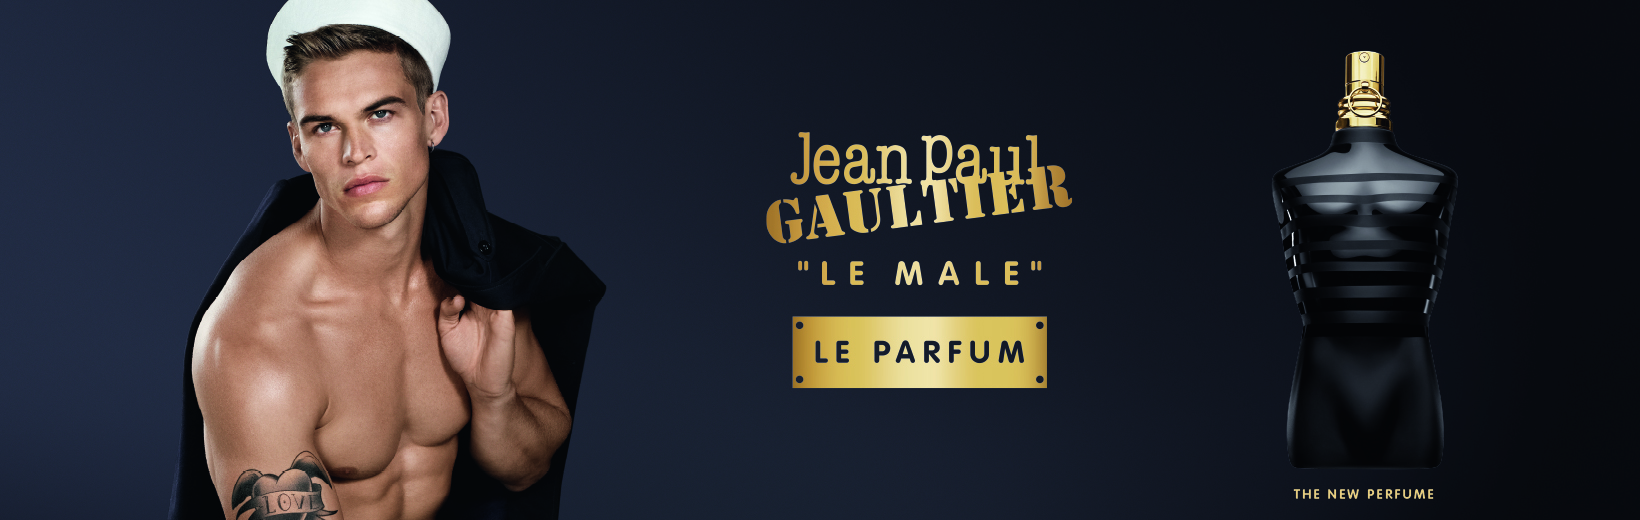 Jean Paul Gaultier Le Male Le Parfum_1